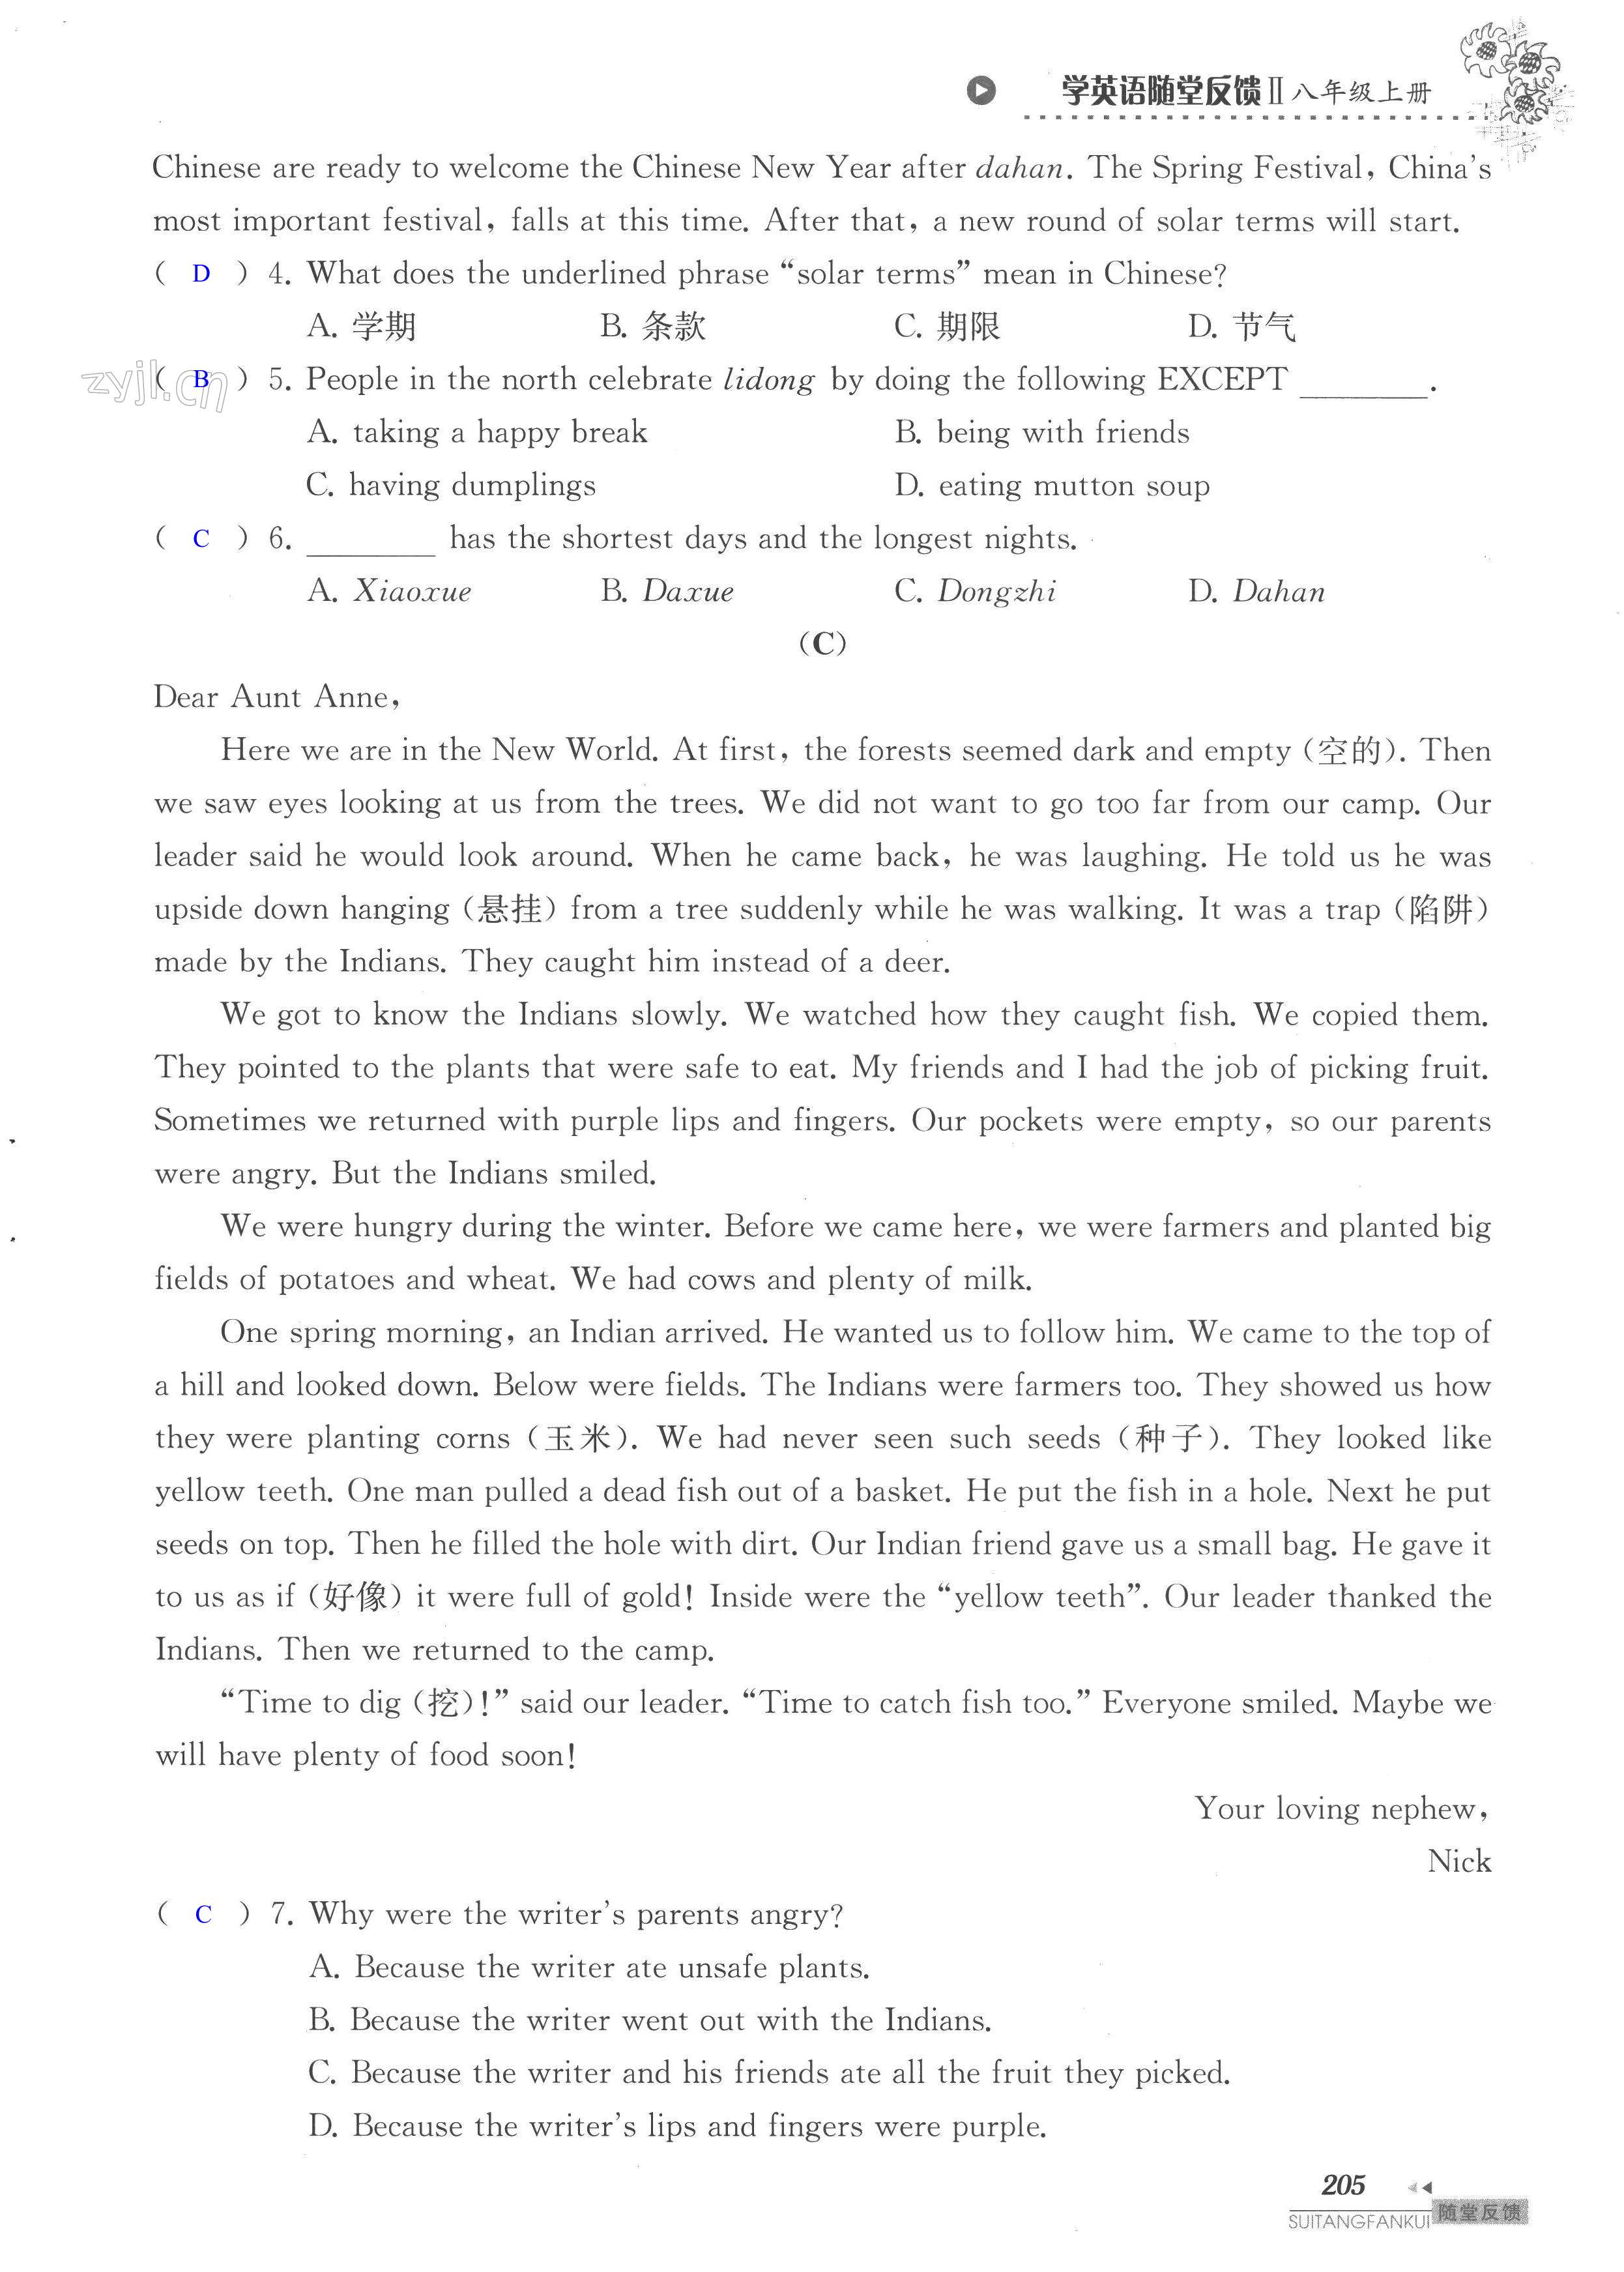 单元综合测试卷 Test for Unit 7 of 8A - 第205页